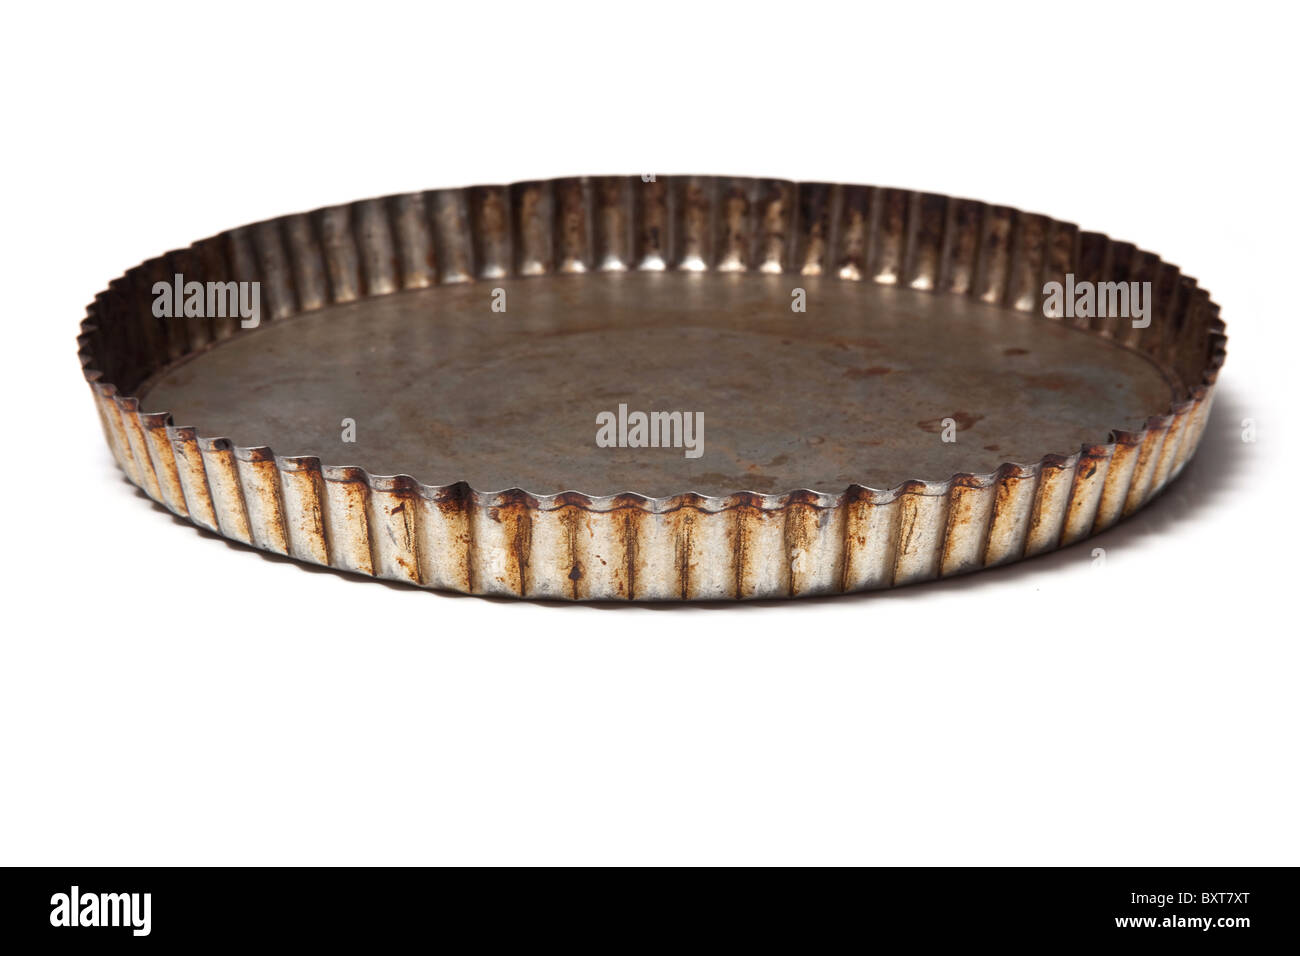 Flan baking tin isolated on a white studio background. Stock Photo